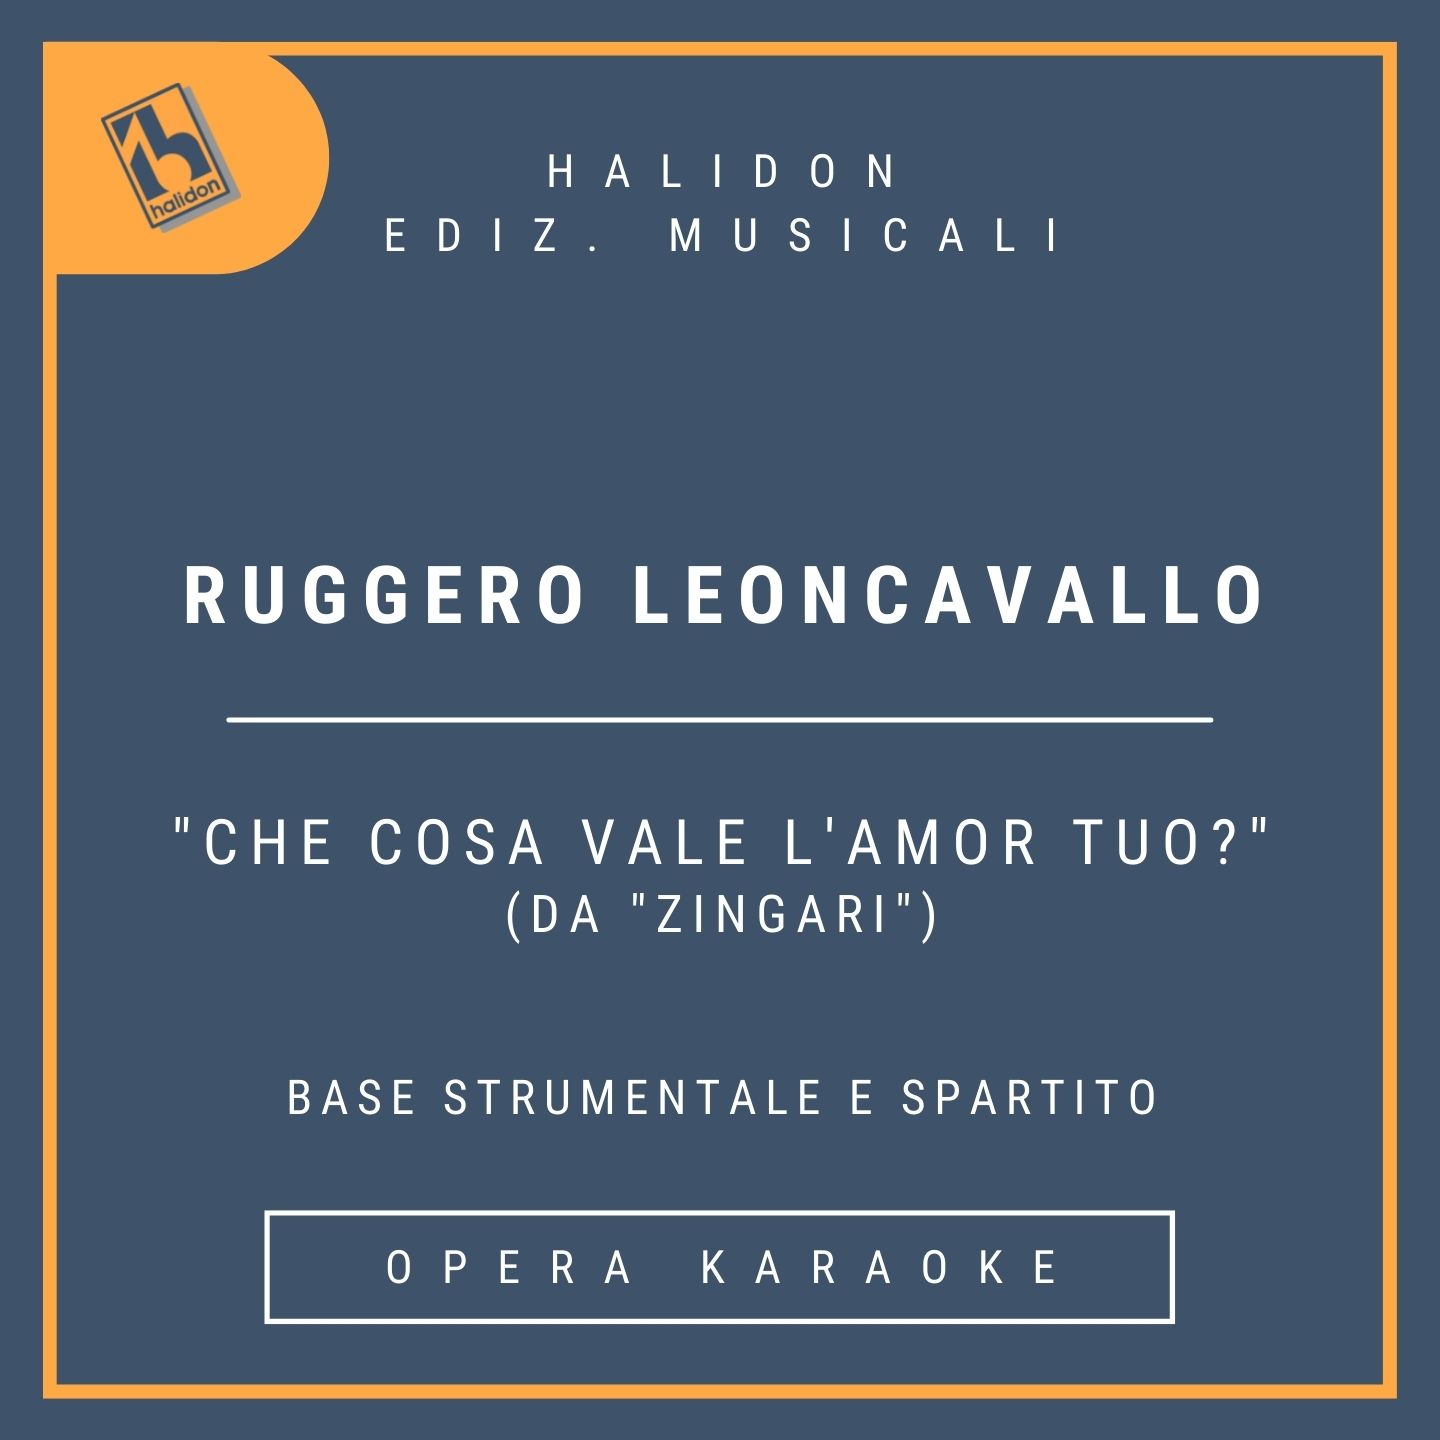 Ruggero Leoncavallo - Che cosa vale l'amor tuo? (from 'Zingari') - Fleana's Aria (dramatic soprano) - Instrumental track + sheet